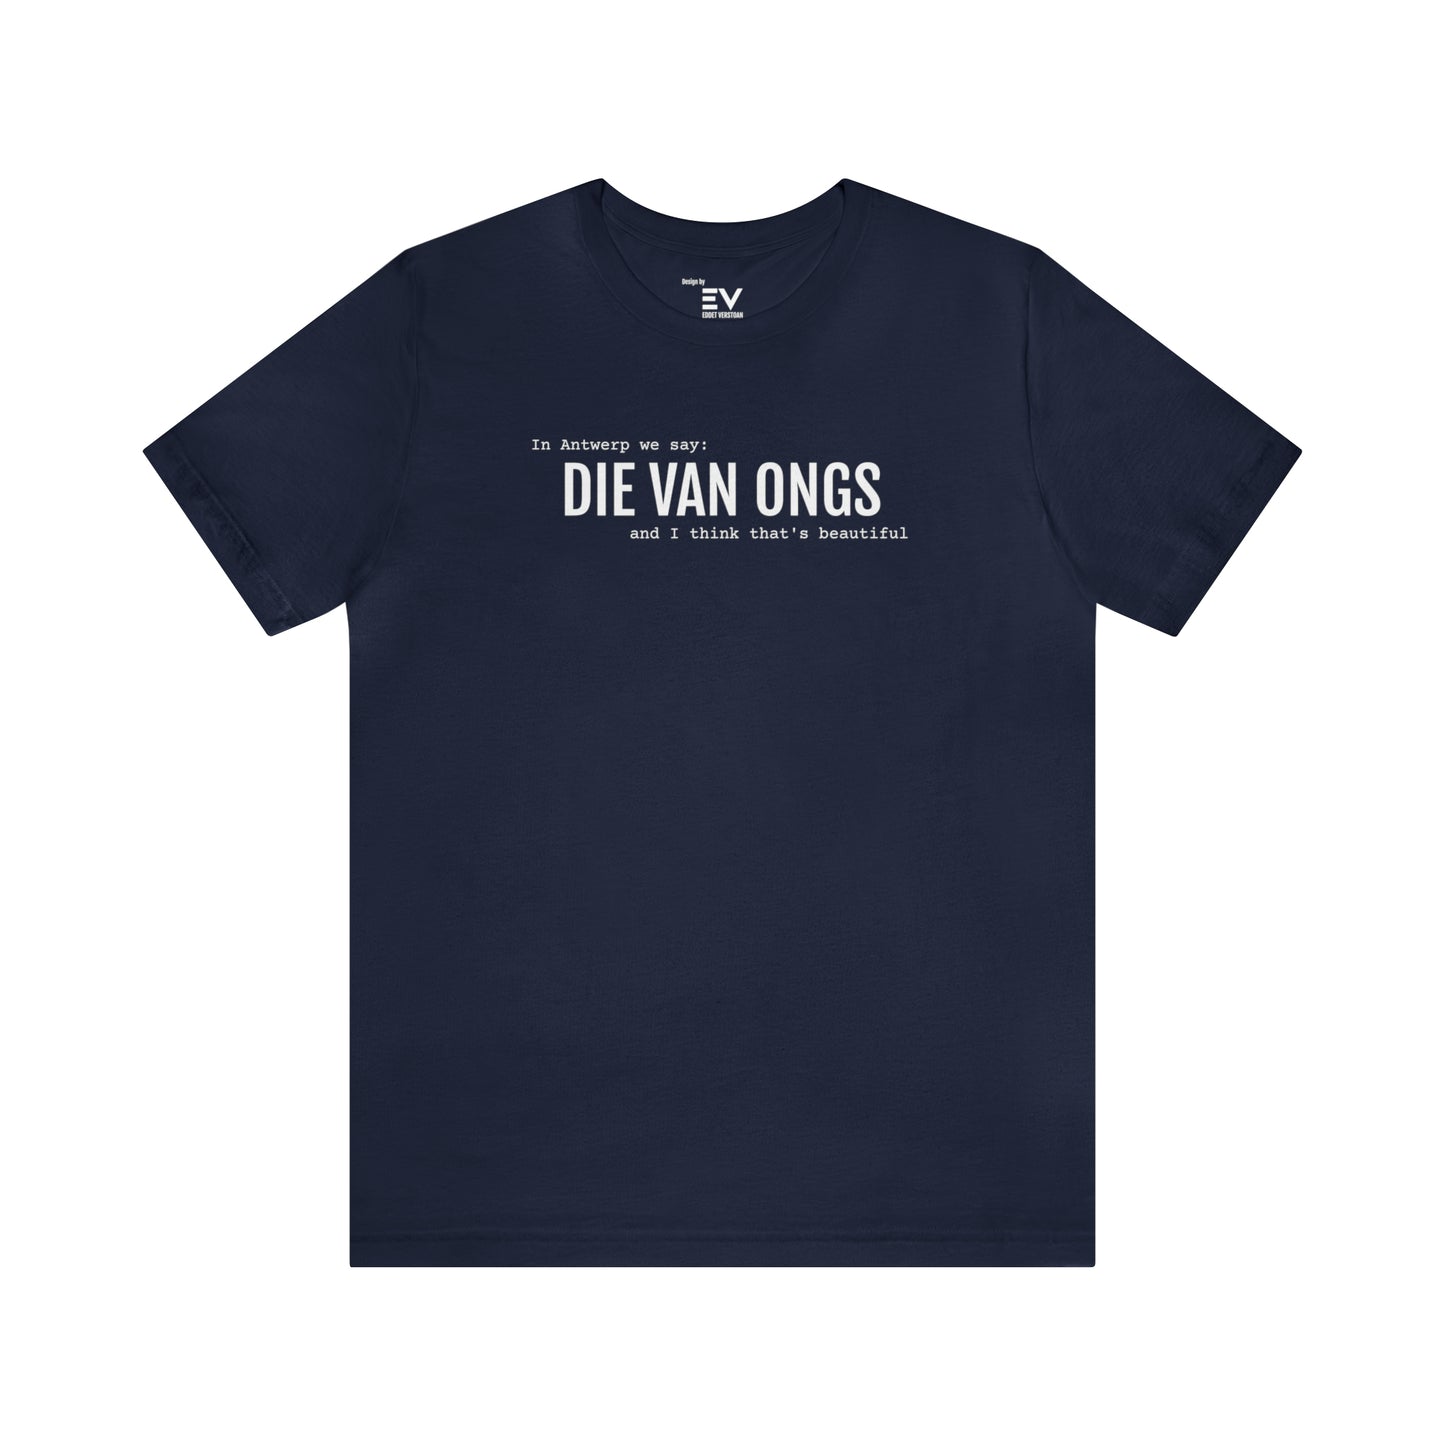 Beautiful - DIE VAN ONGS | Unisex T-Shirt uit Antwerpen - Marine Blauw